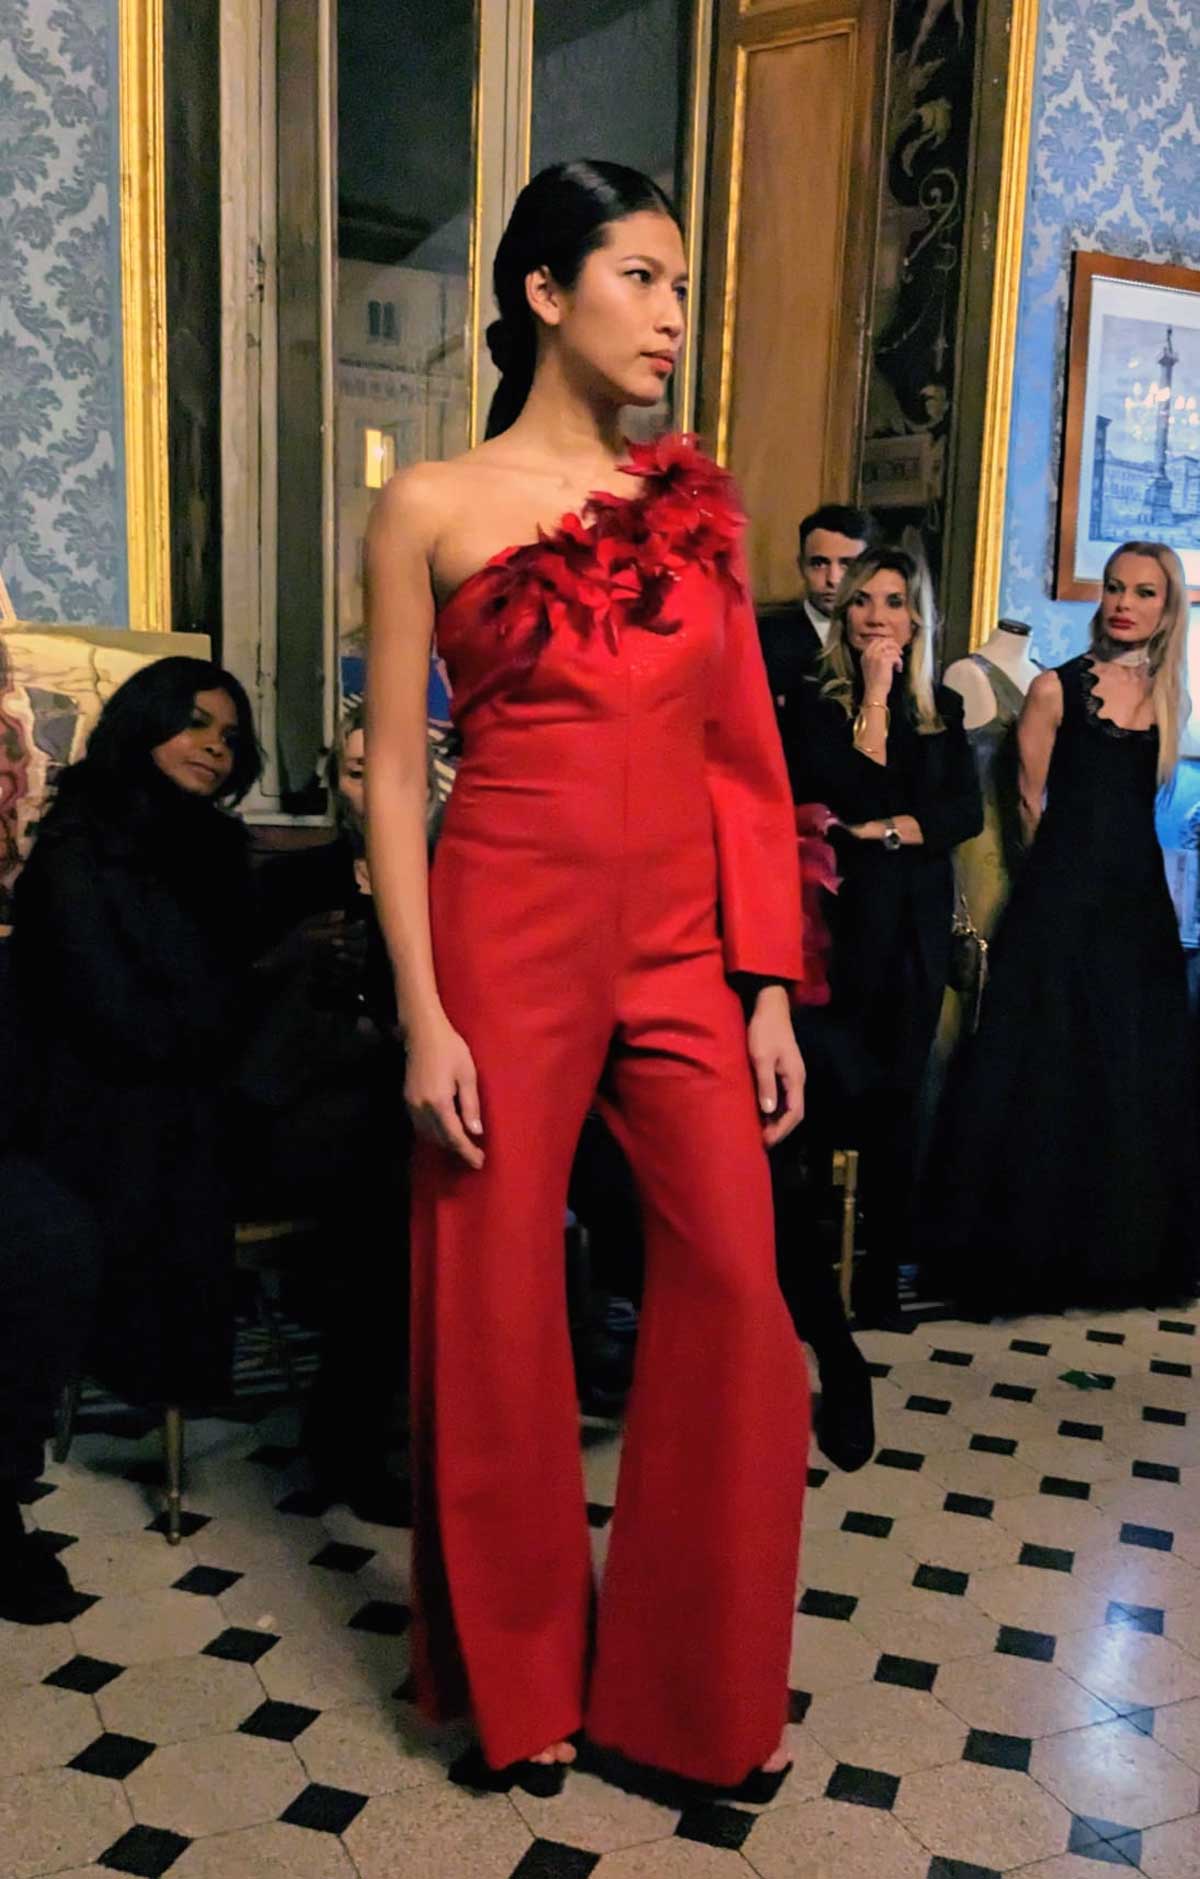 Mod’Art Roma - Il fascino dei colori - sfilata modelle nello storico Palazzo Ferrajoli - evento d’alta moda con gli eleganti abiti di Elins moda abito donna in rosso